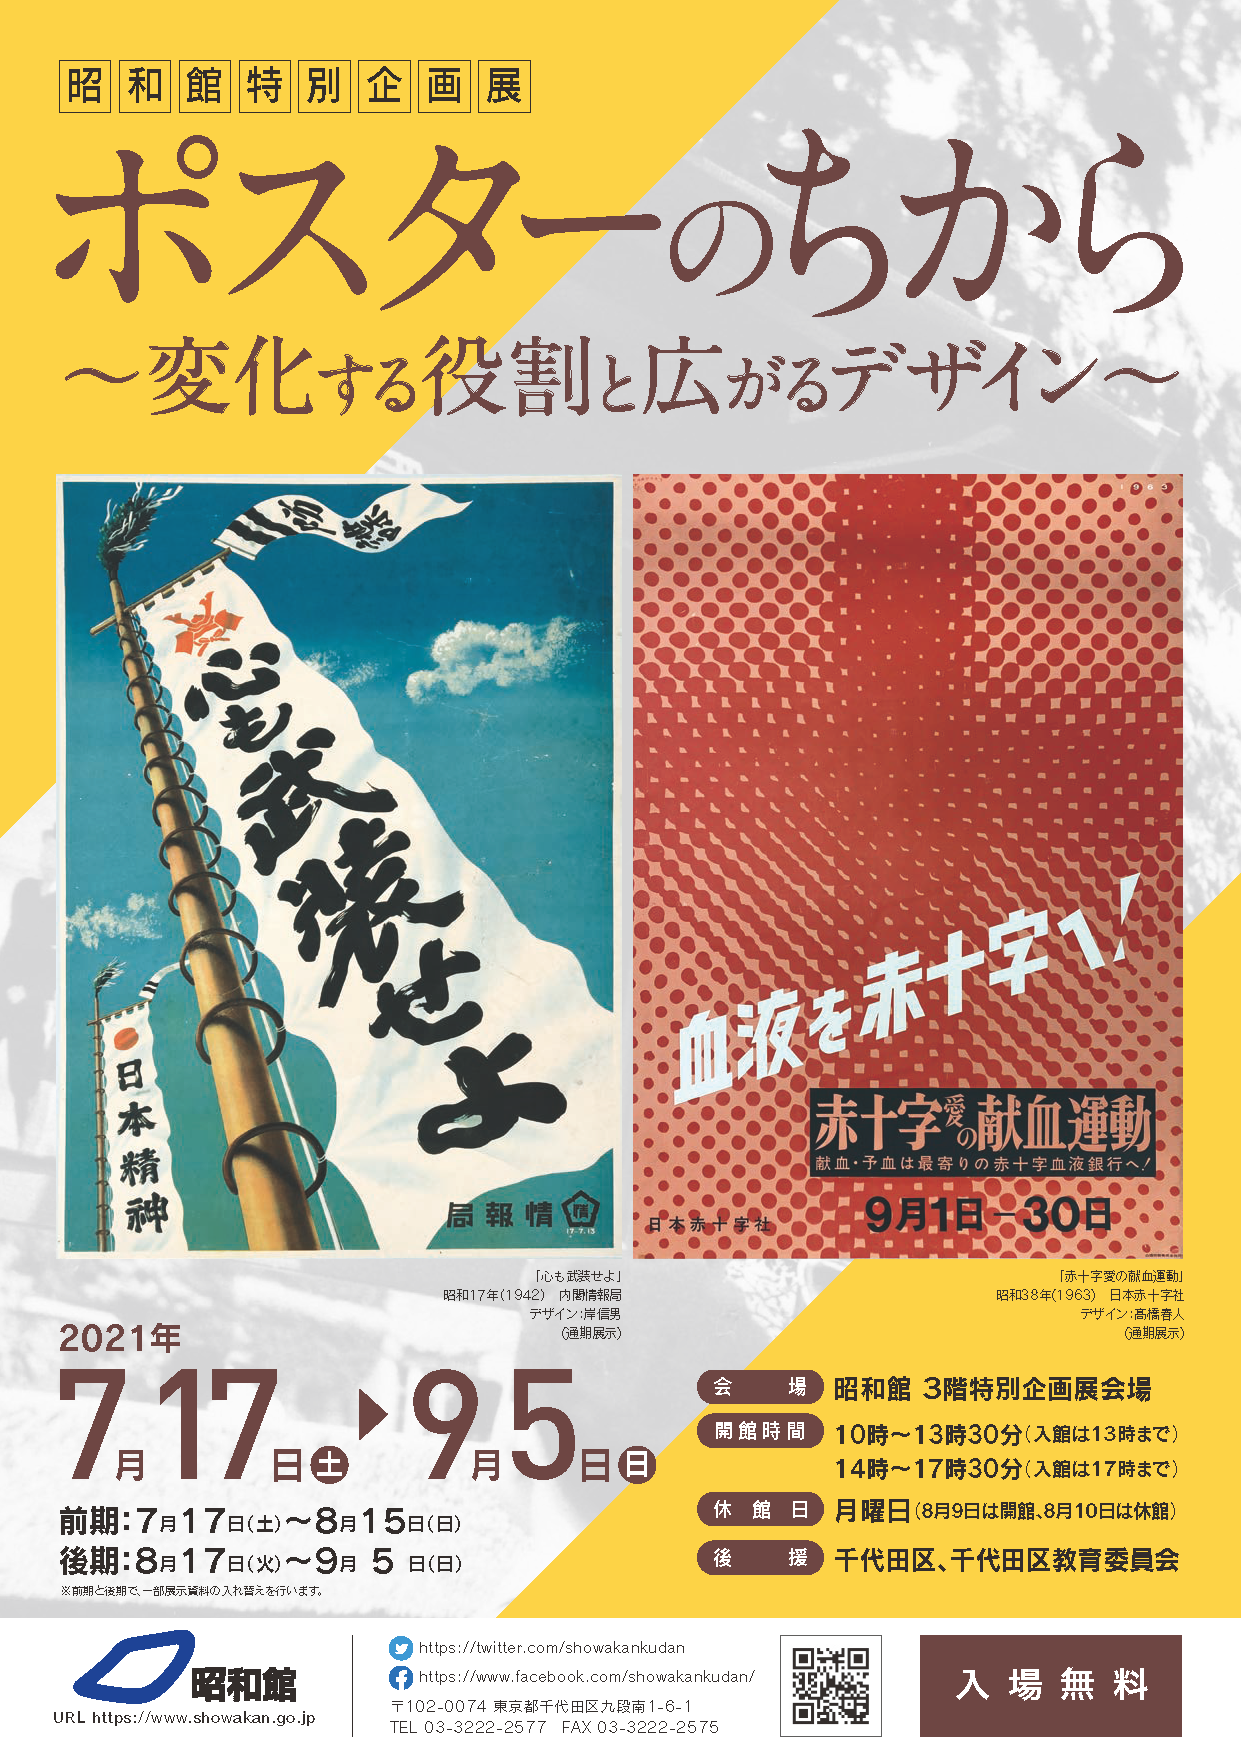 その他「魔法の手 ロッカクアヤコ作品展」展覧会オフィシャルポスター